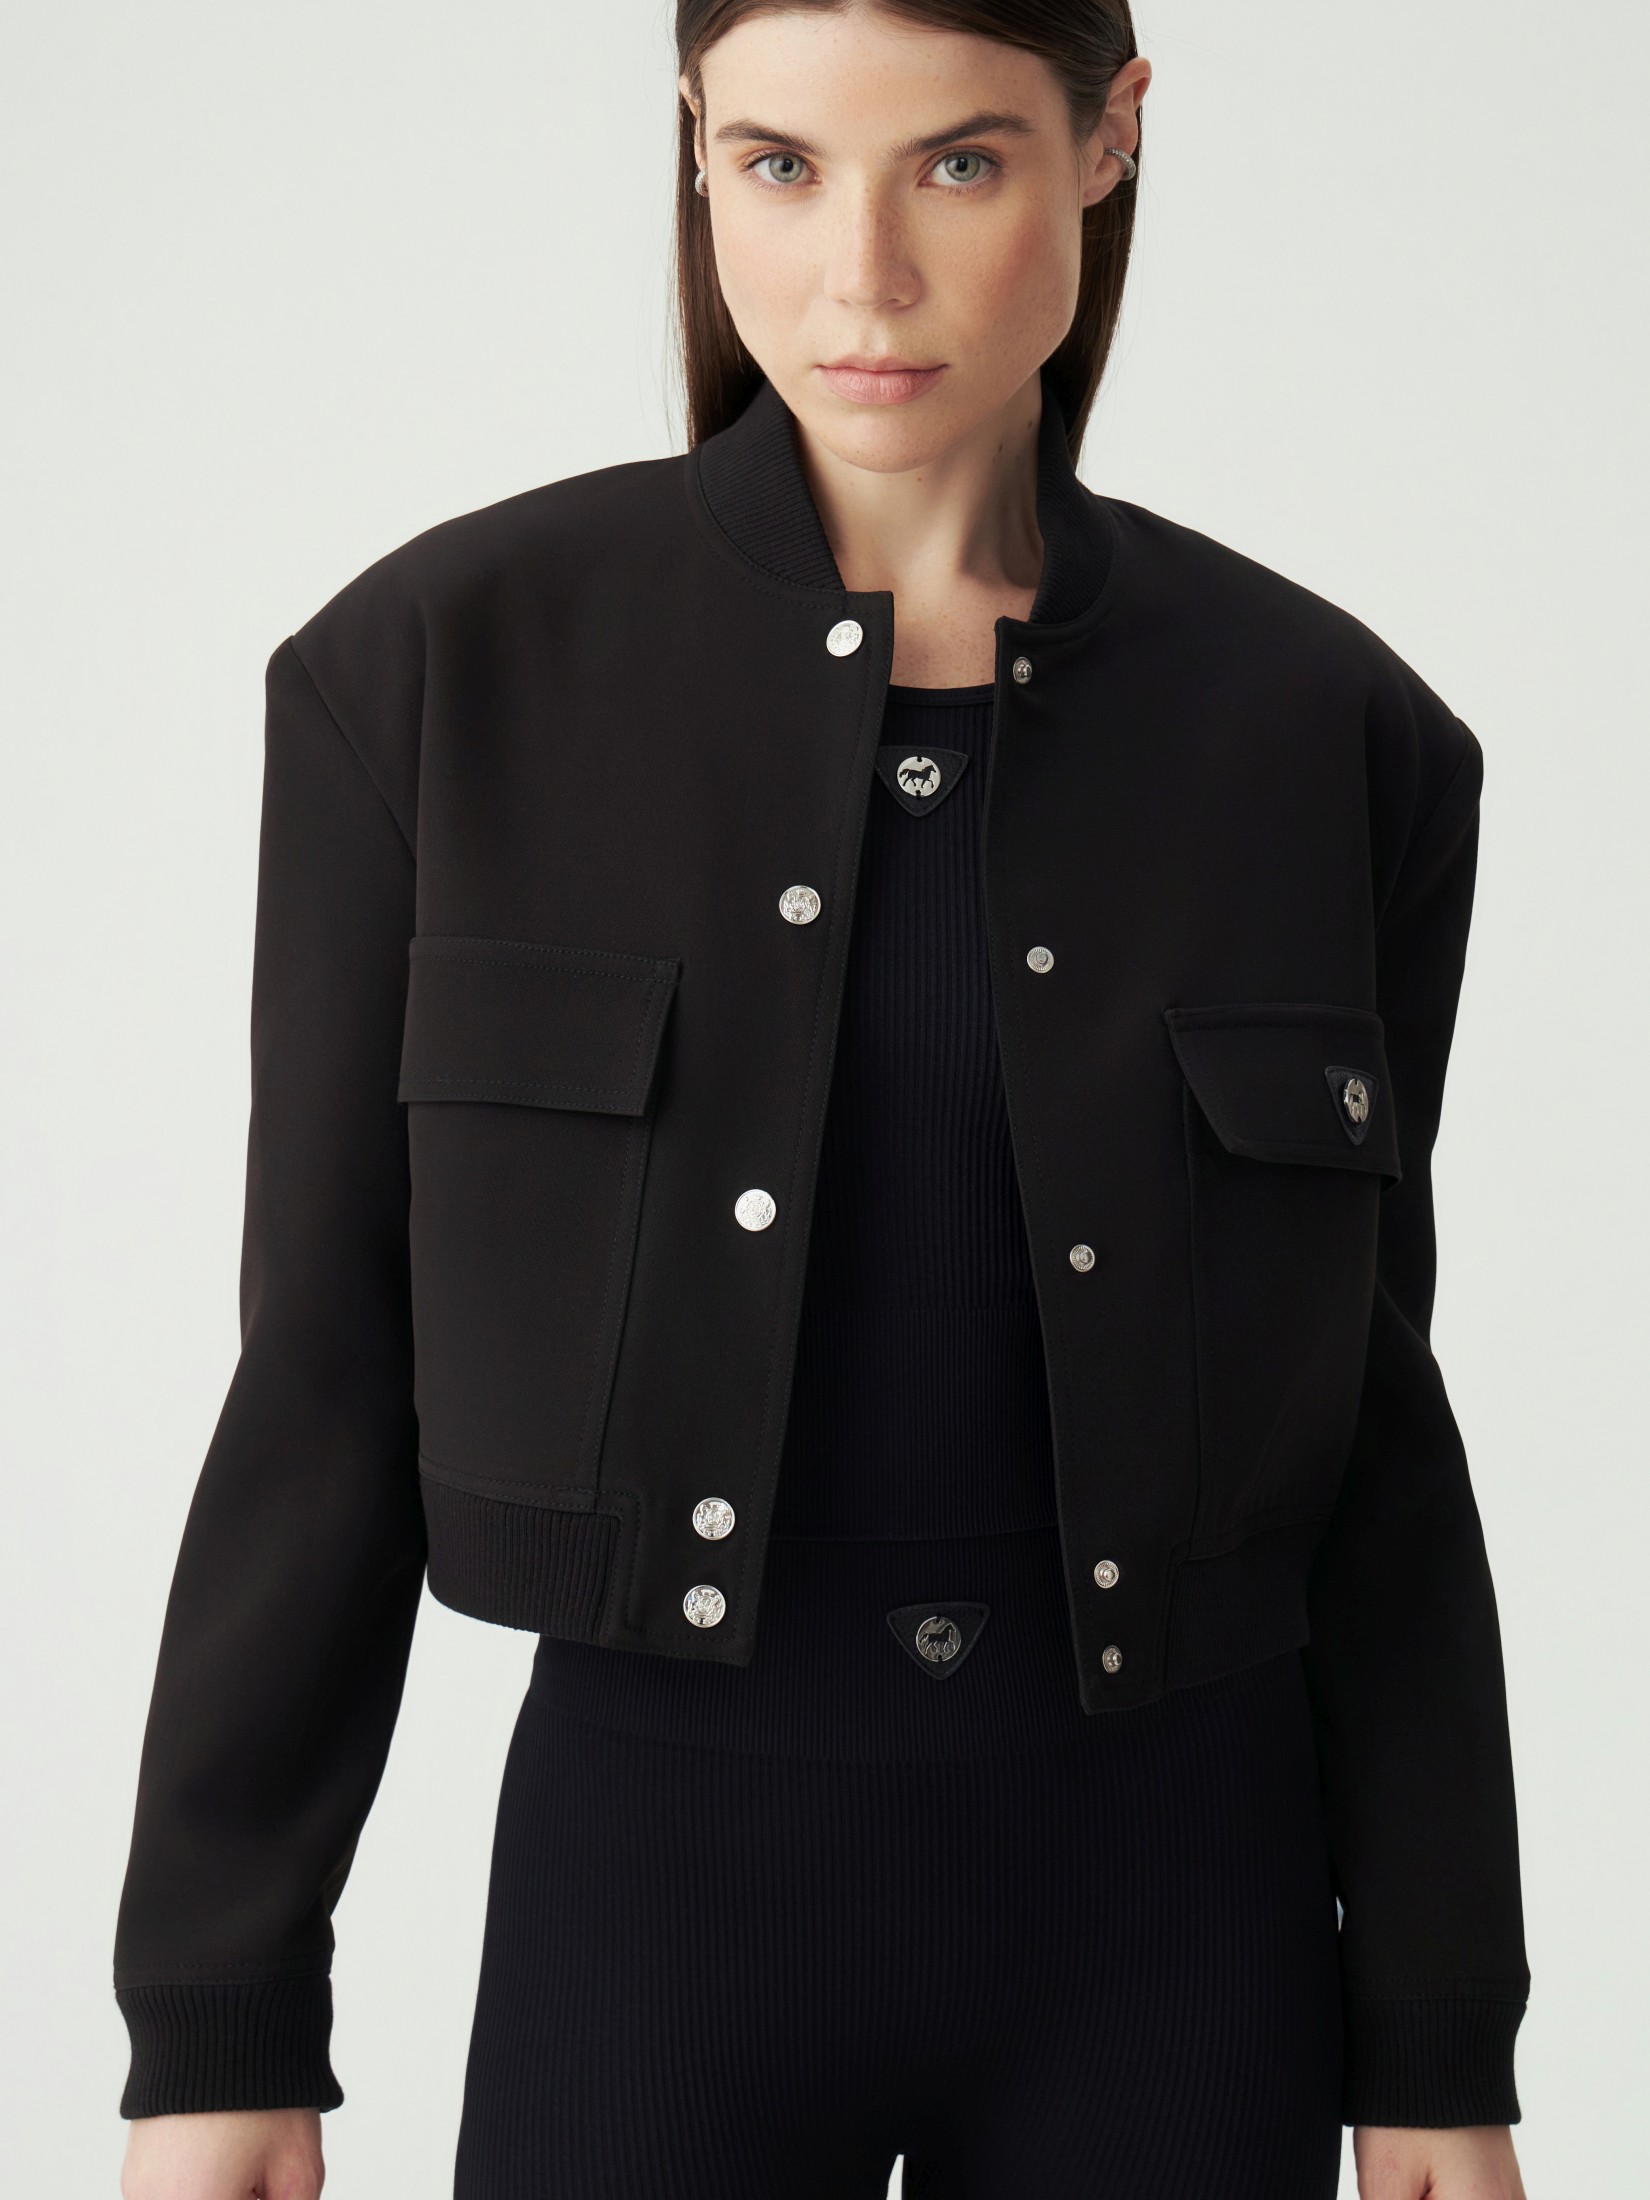 Куртка женская черная candy cb 200